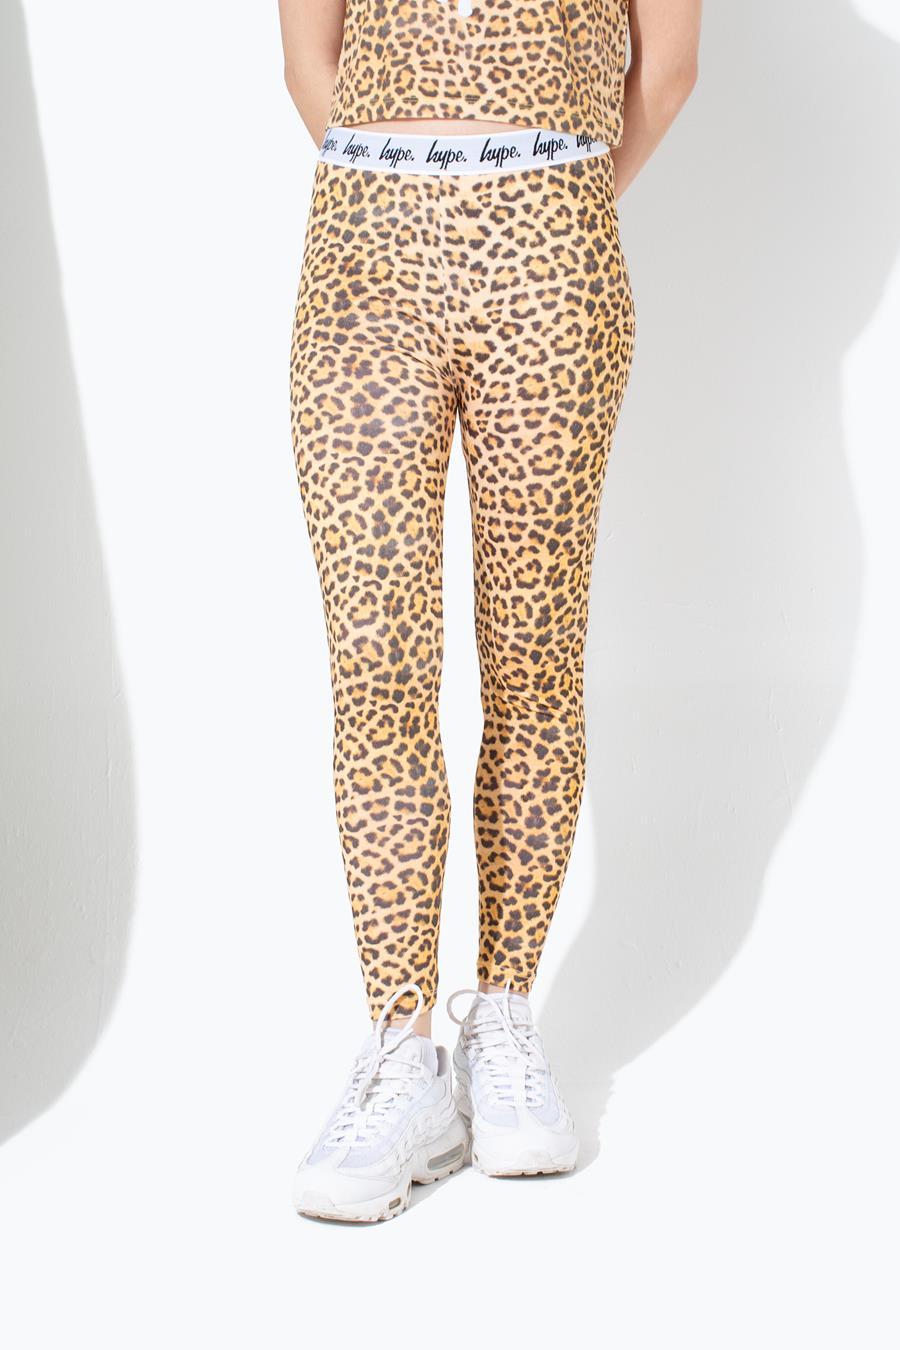 Hype Leopard Kids Leggings | Size 9-10